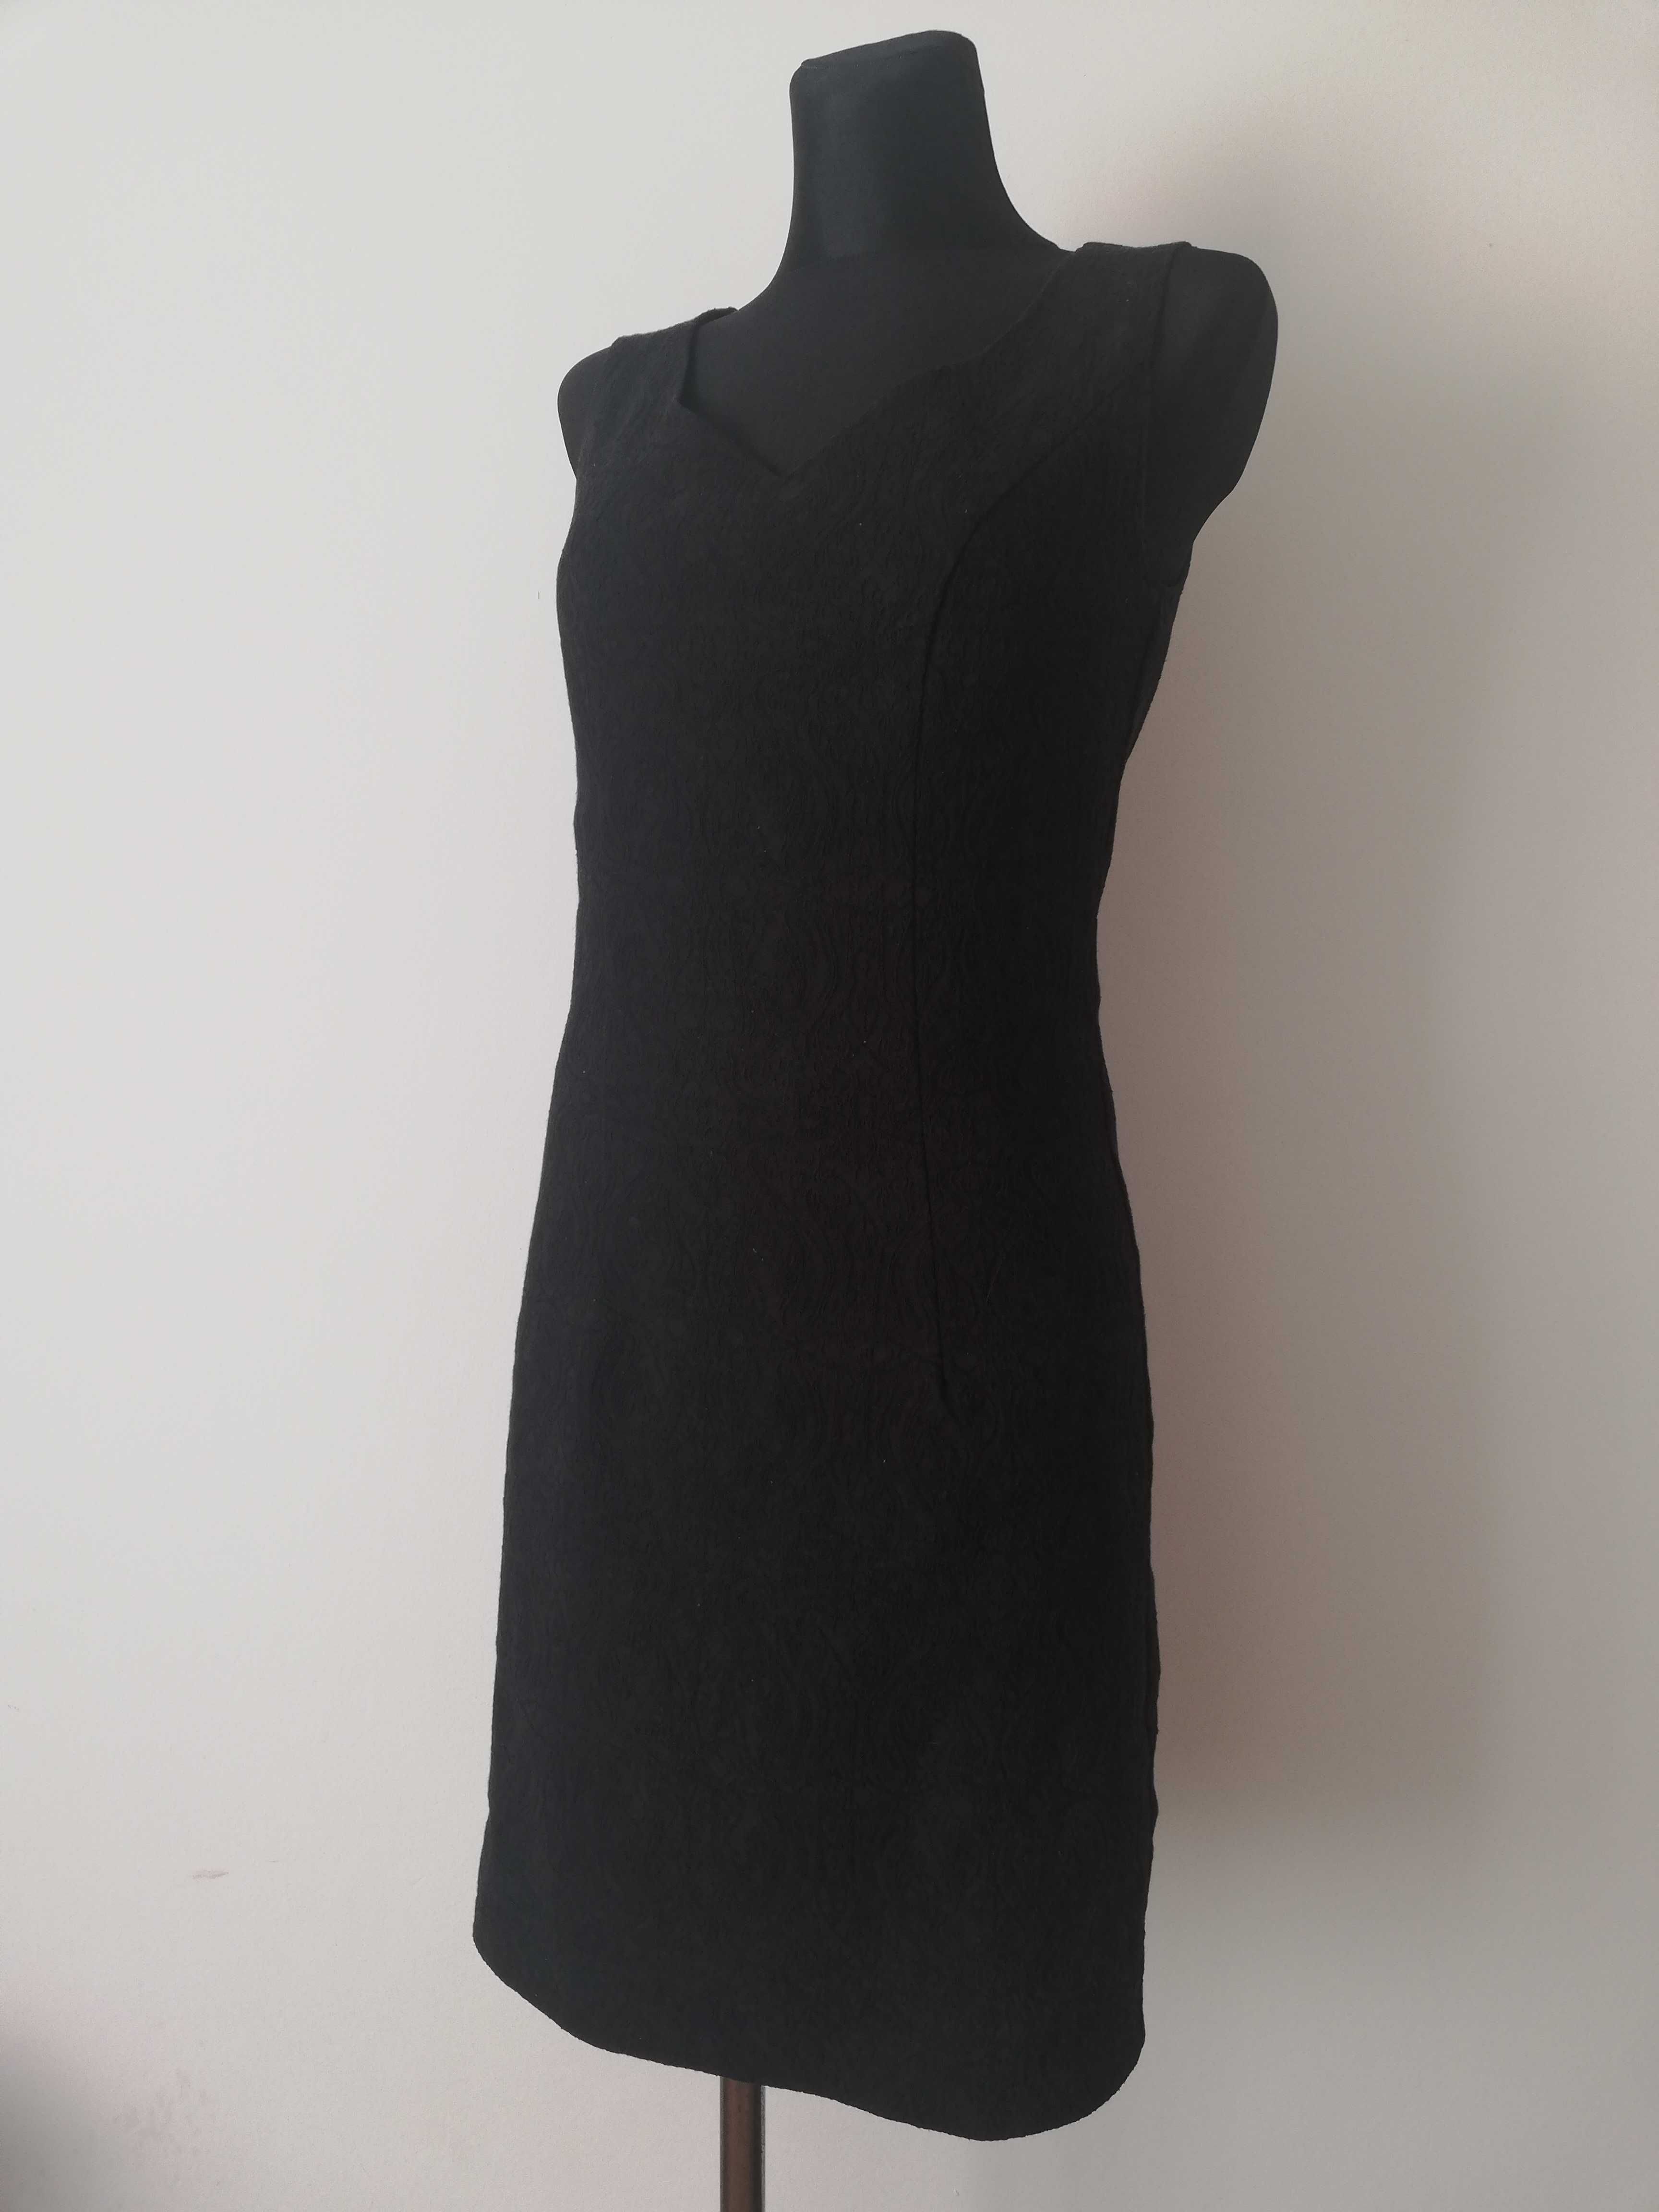 czarna sukienka mini 36 bez rękawów QUIOSQUE mała czarna